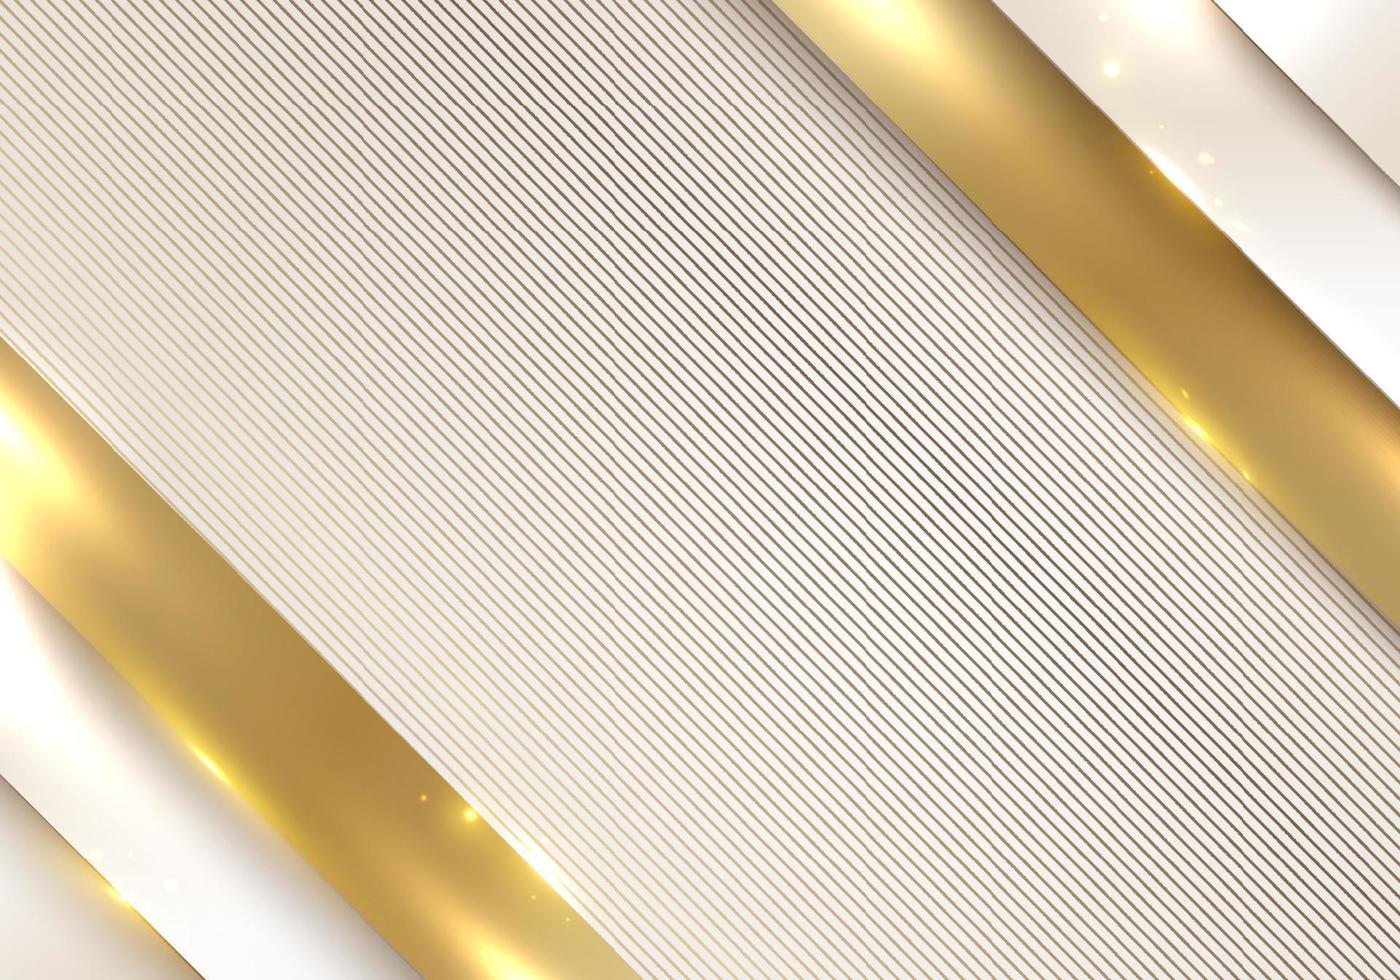 abstrakt bakgrund vitt och guld diagonalt lager ränder mönster med belysning gnistra dekoration lyxig stil vektor